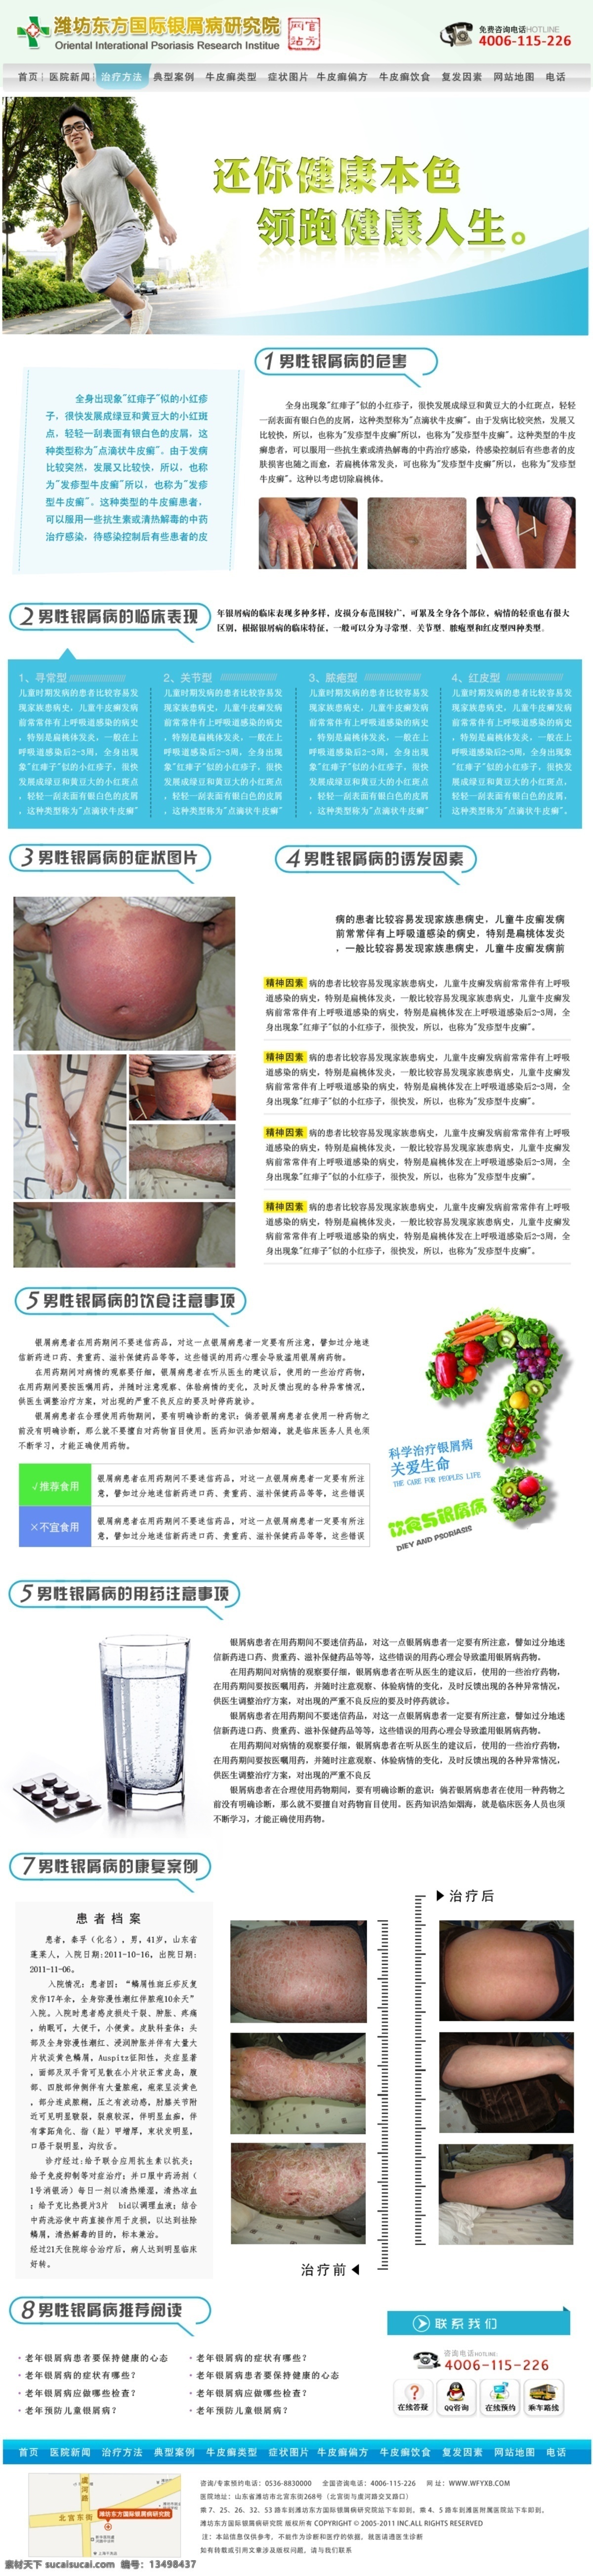 网站专题 单页 分类 分层 牛皮癣 男性 银屑病 web 界面设计 中文模板